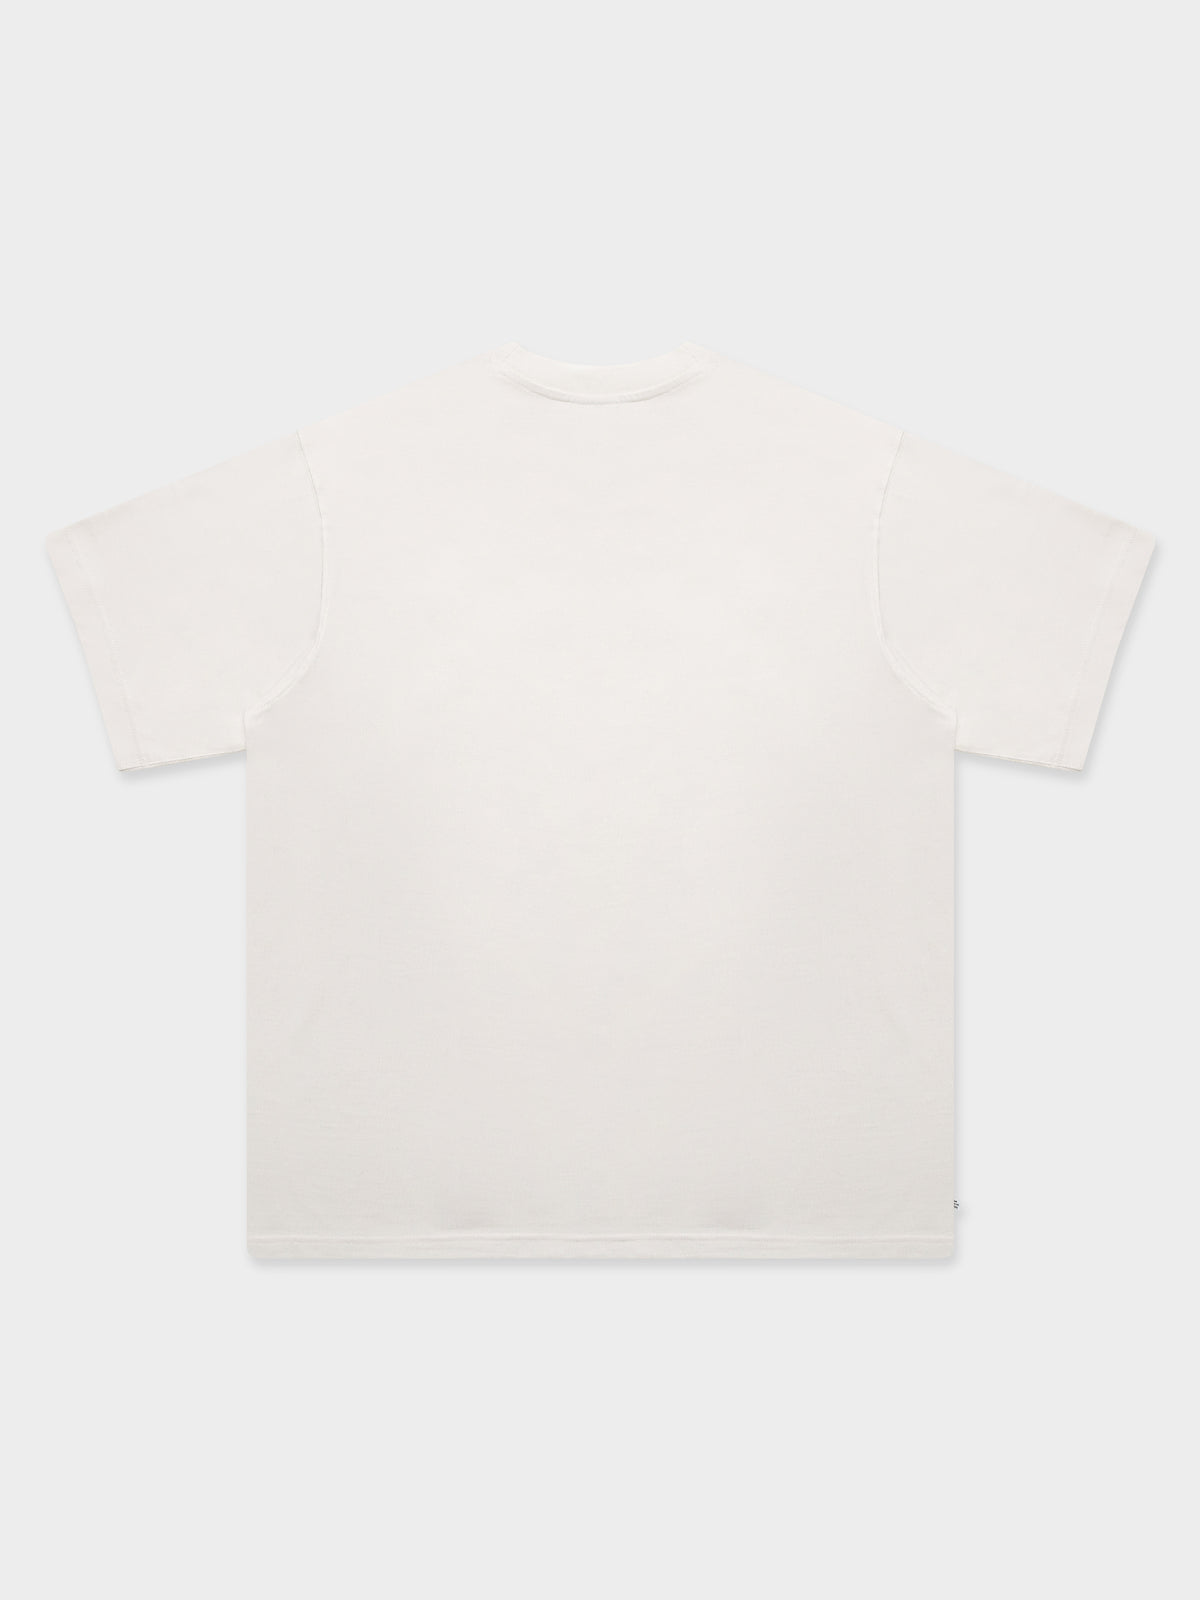 Originals Contempo T-Shirt in White